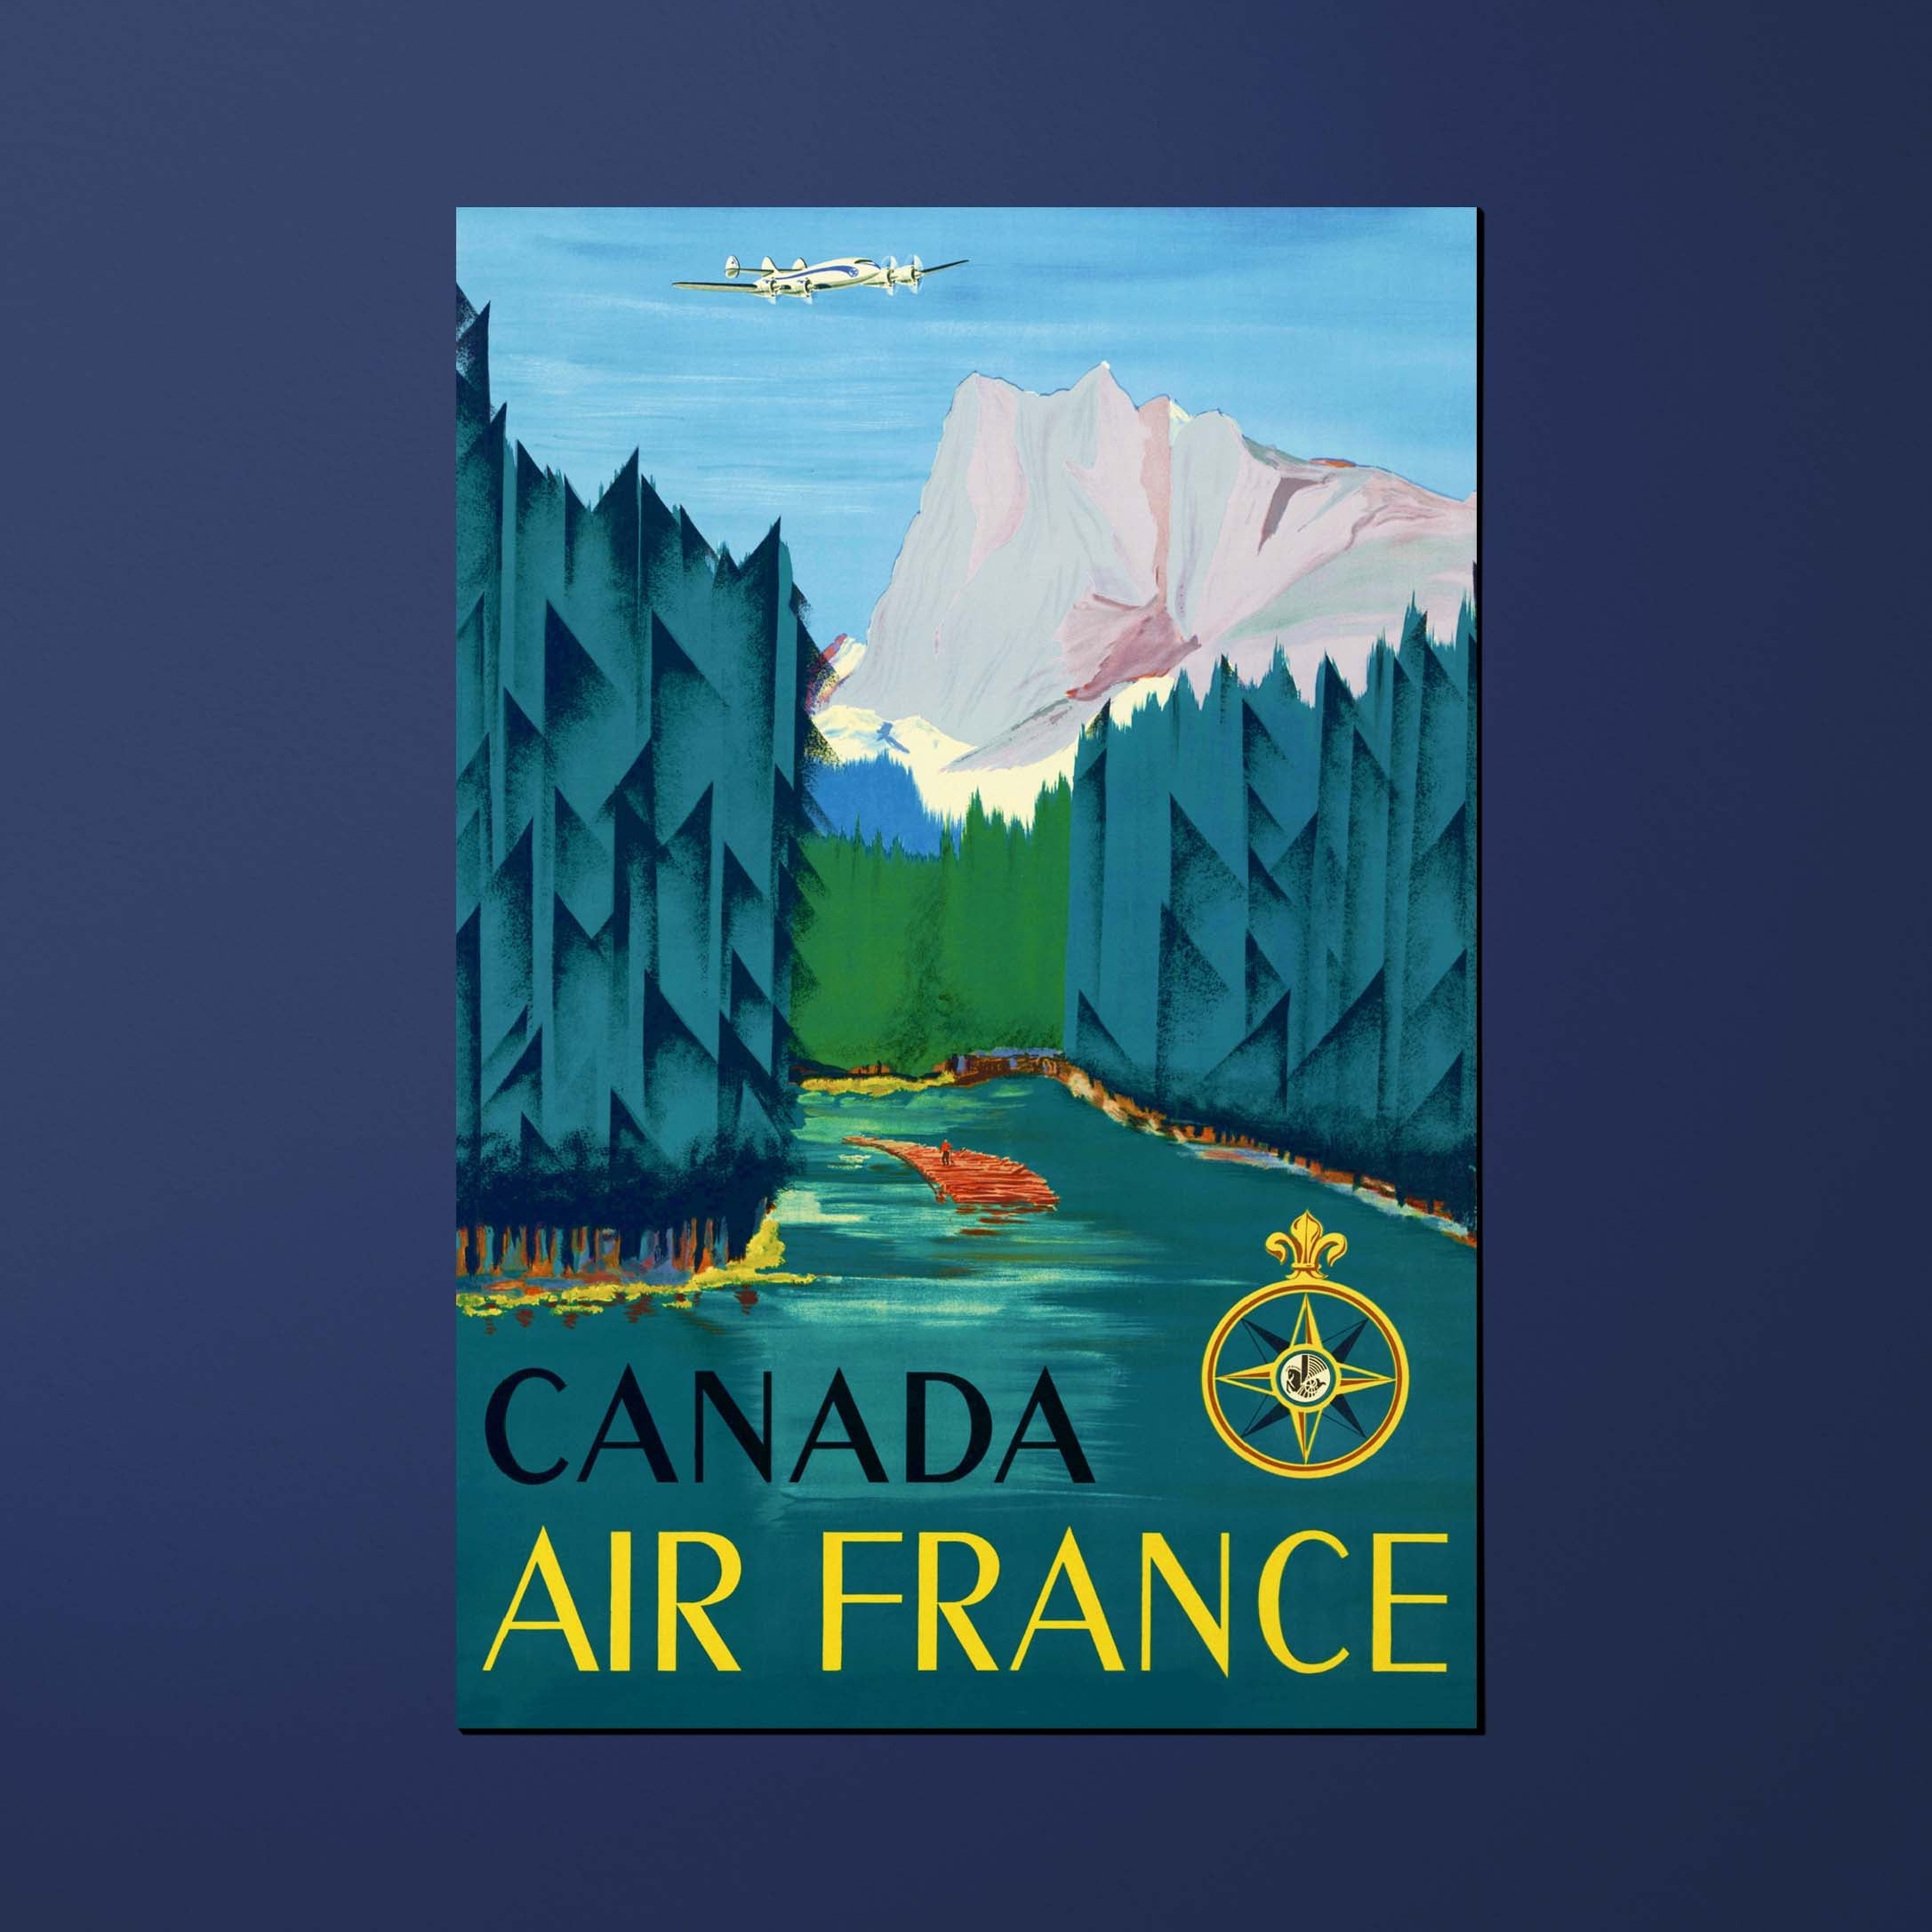 Carte postale Air France Legend Canada, montagne et rivière